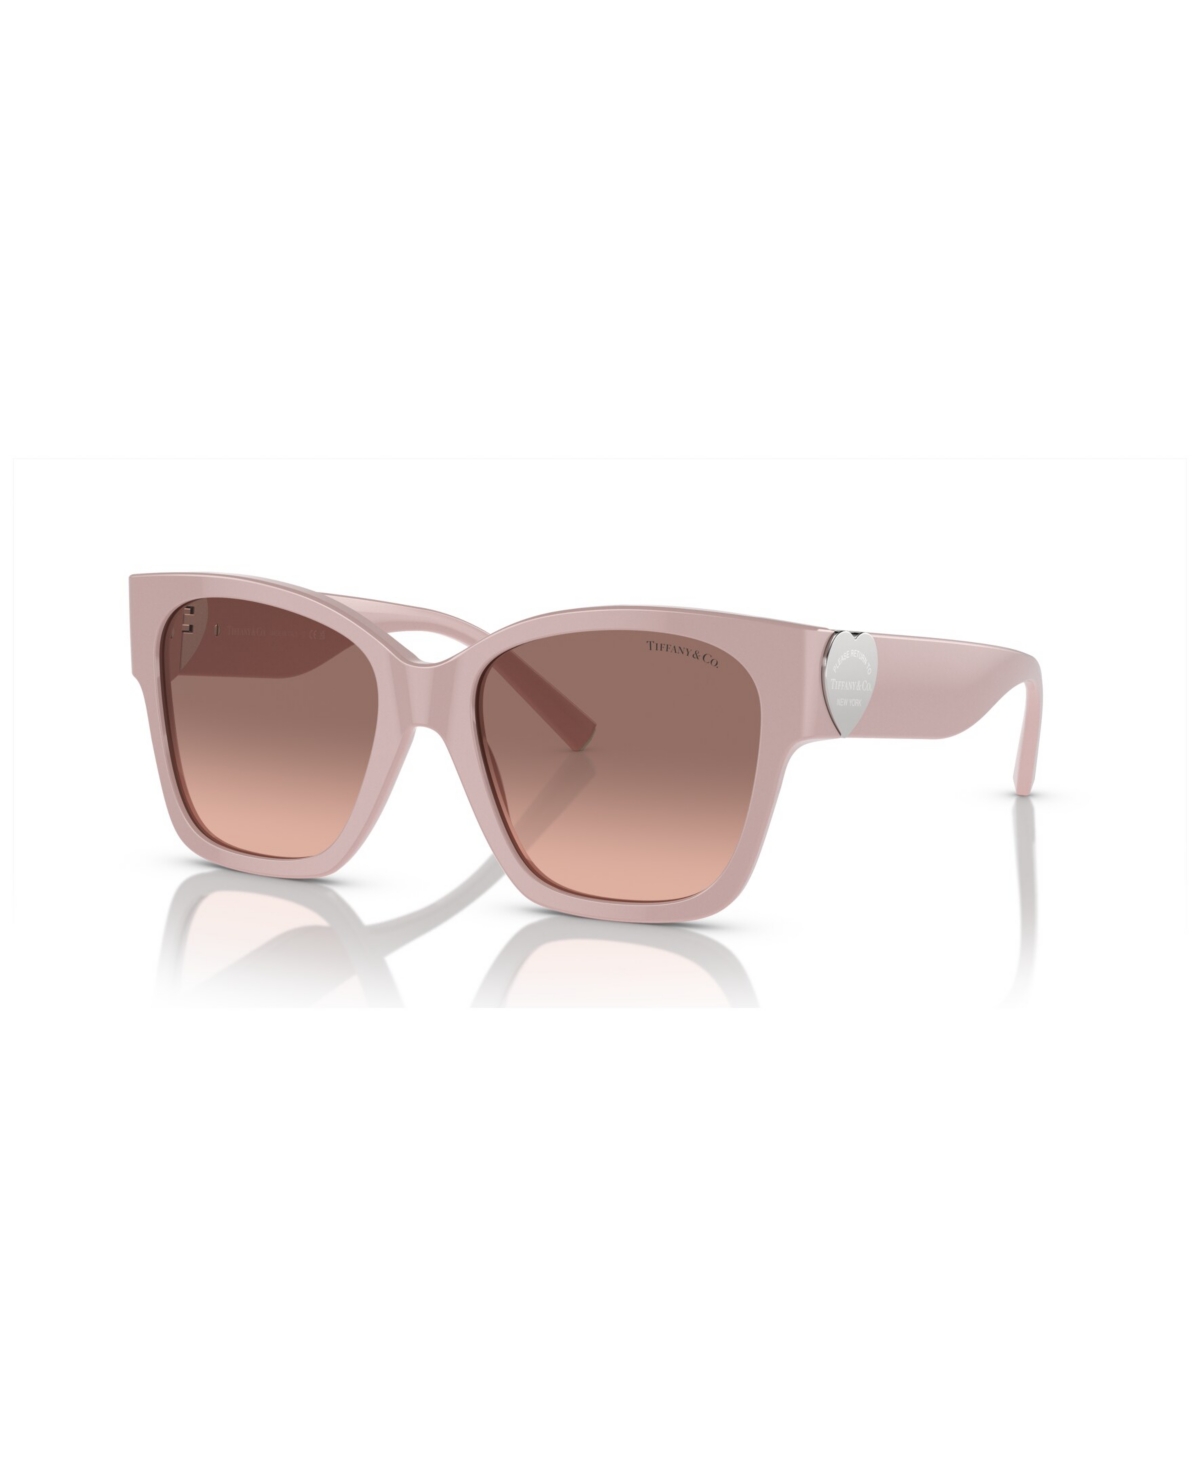 Tiffany & Co Women's Sunglasses, Gradient Tf4216 In Dusty Pink